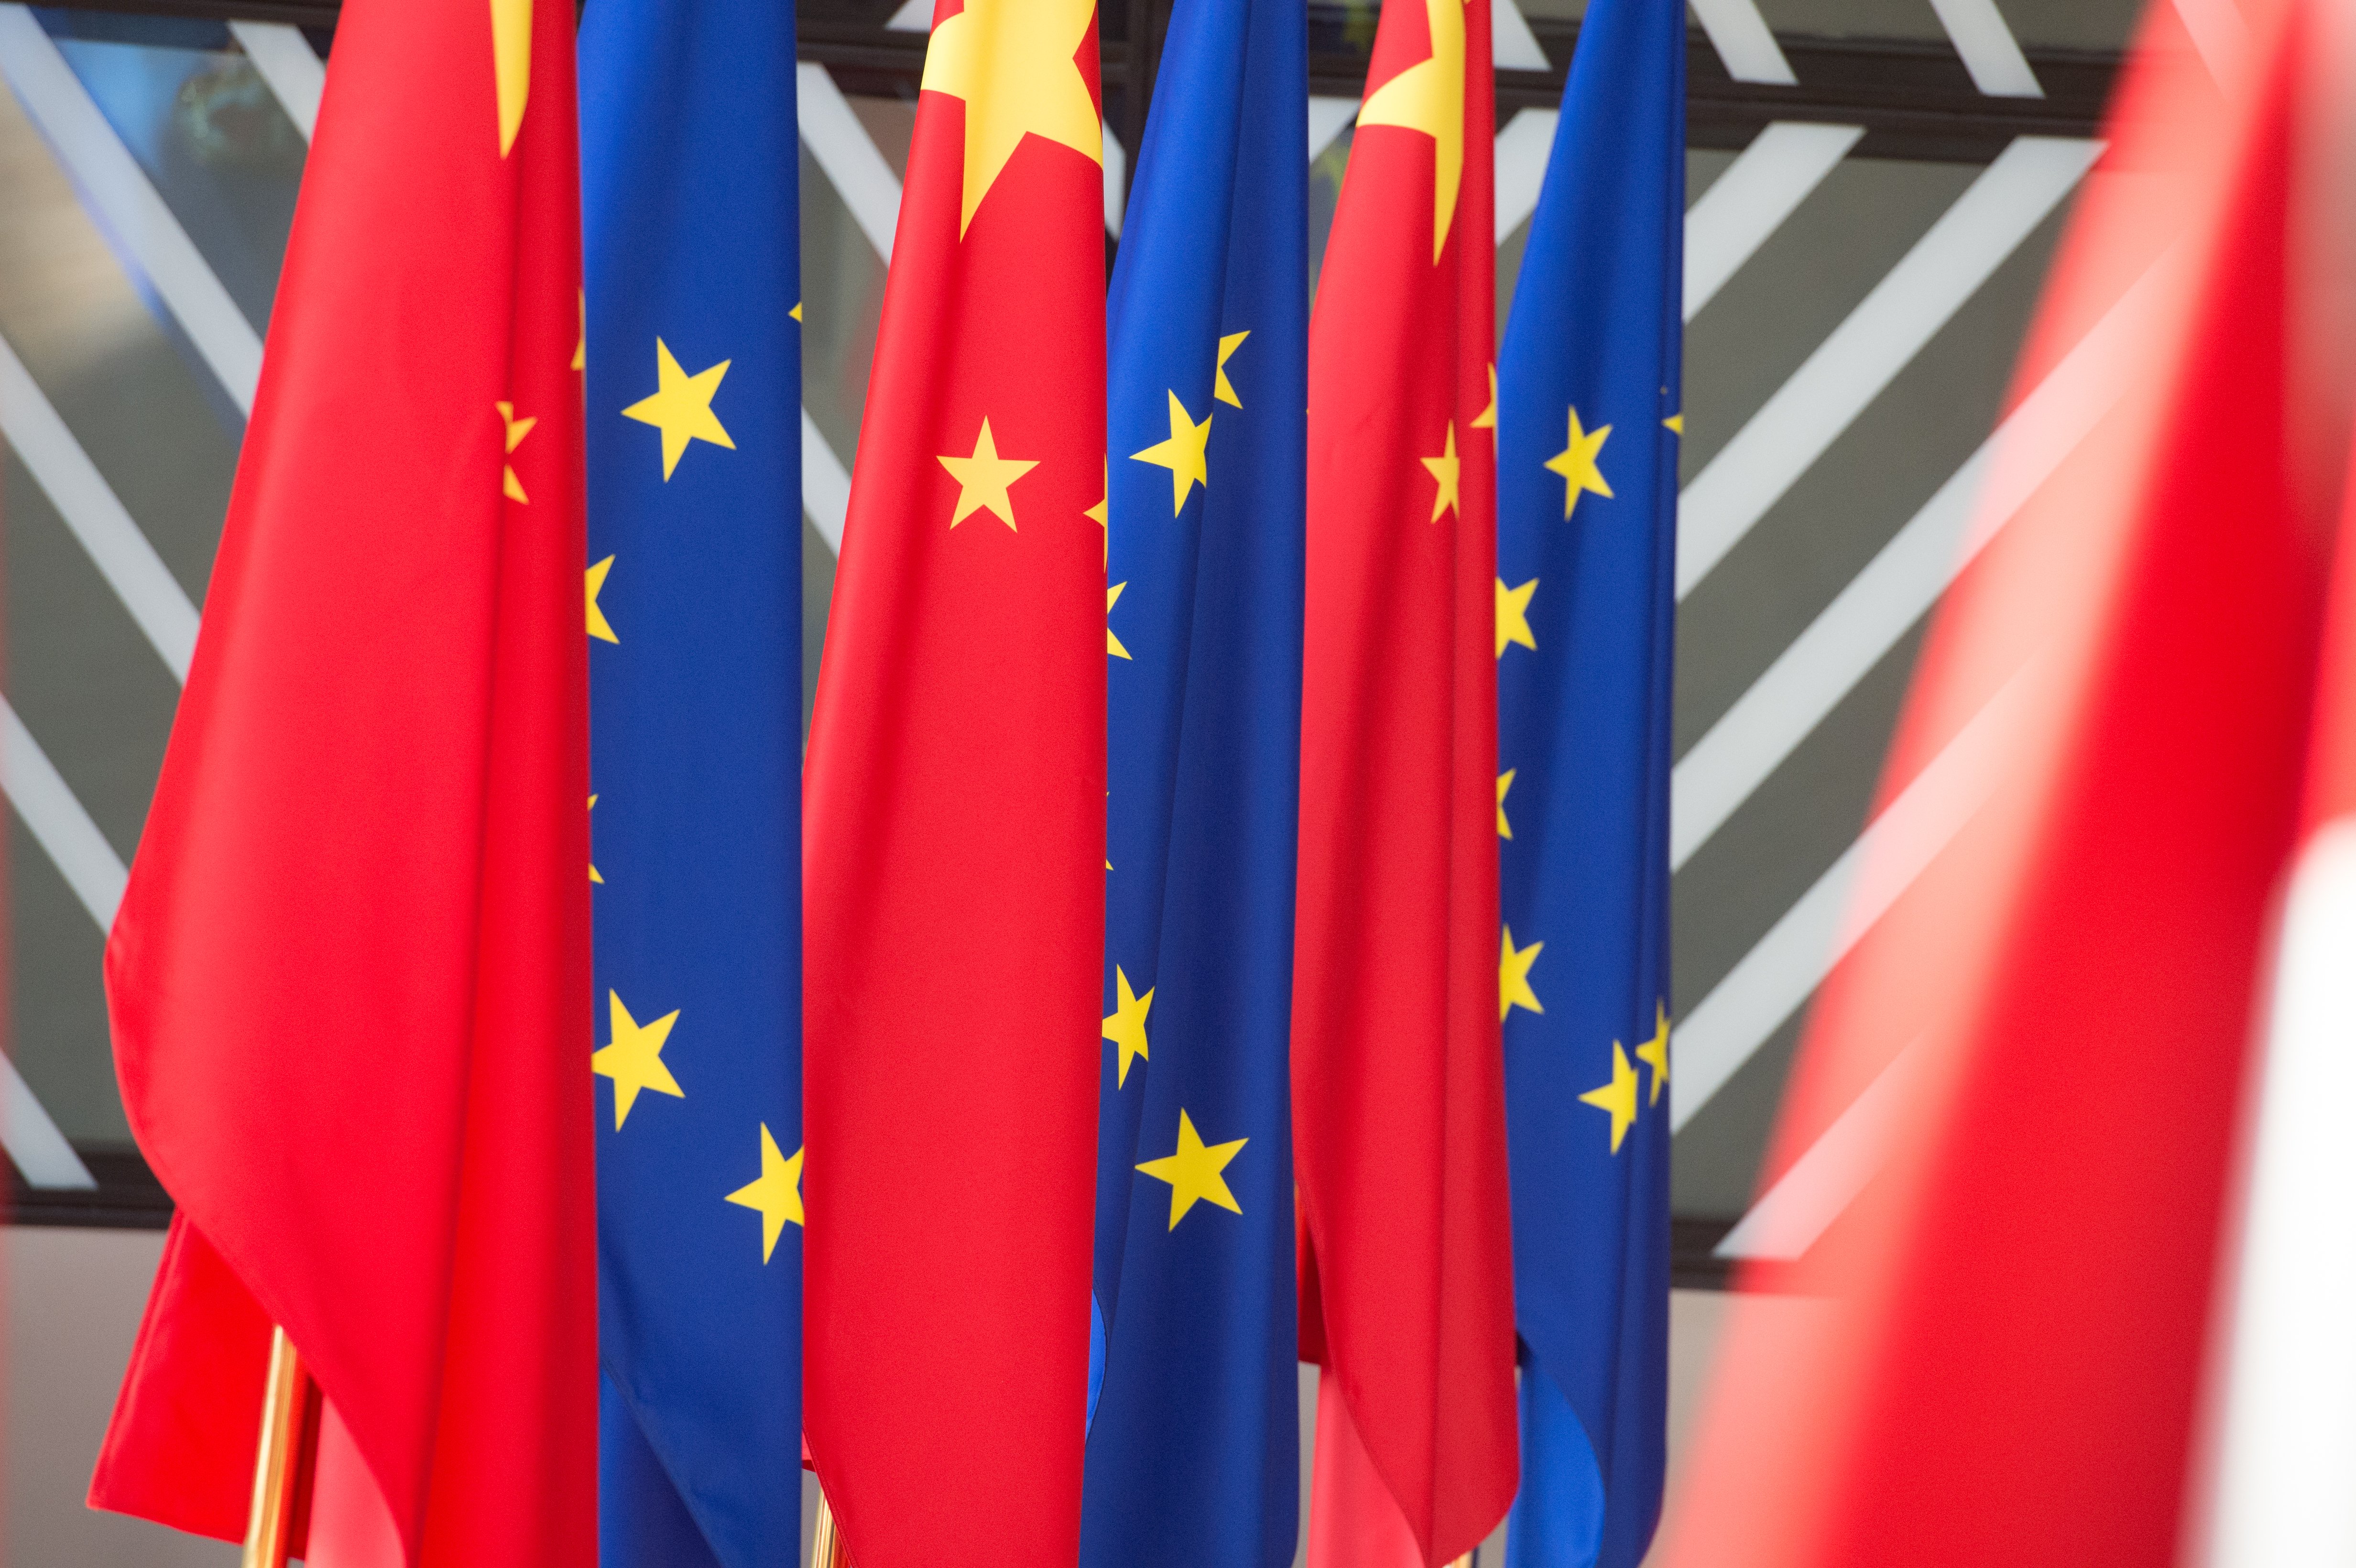 Стривожена агресією росії, Європа переосмислює свої зв’язки з Китаєм, - Bloomberg